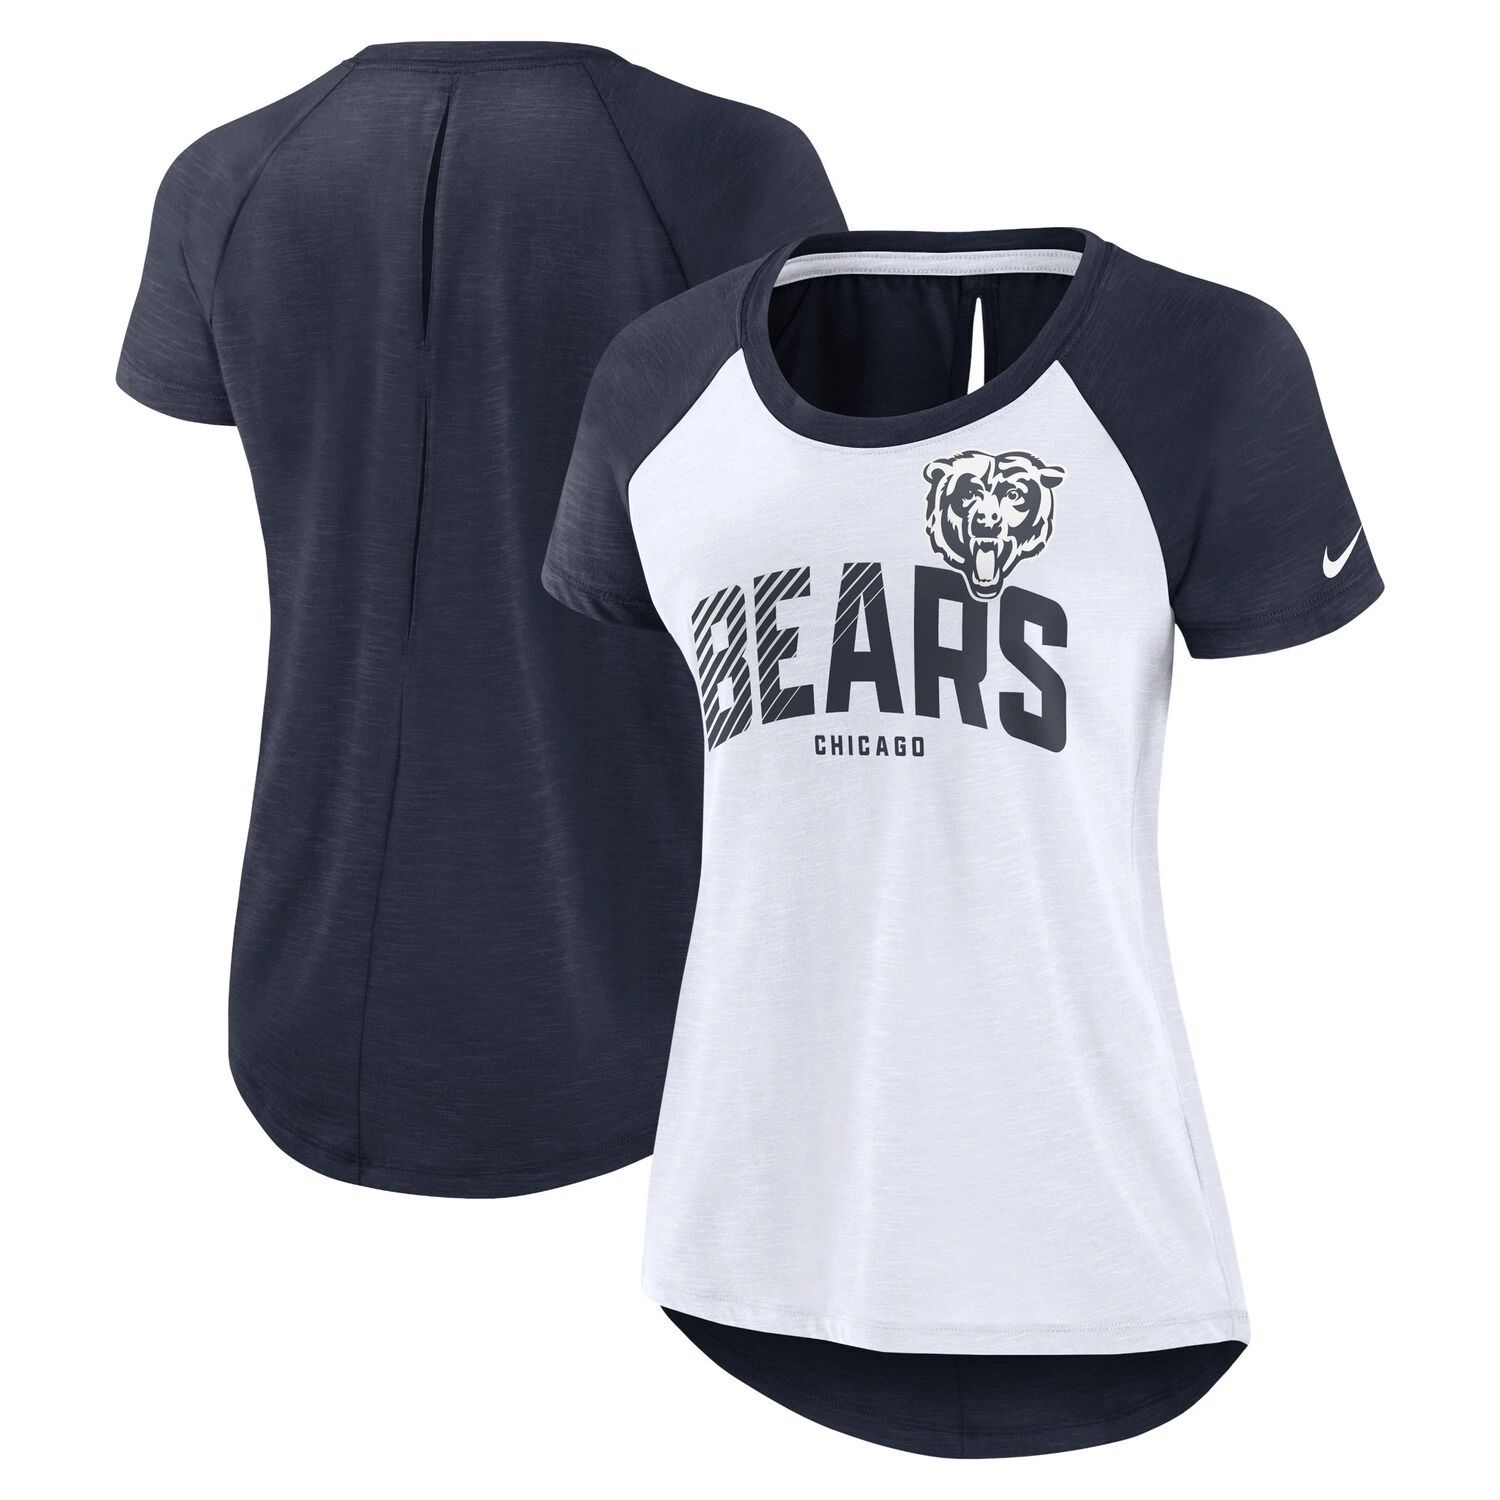 Женская футболка реглан Nike White/Heather Navy Chicago Bears с вырезом на спине Nike